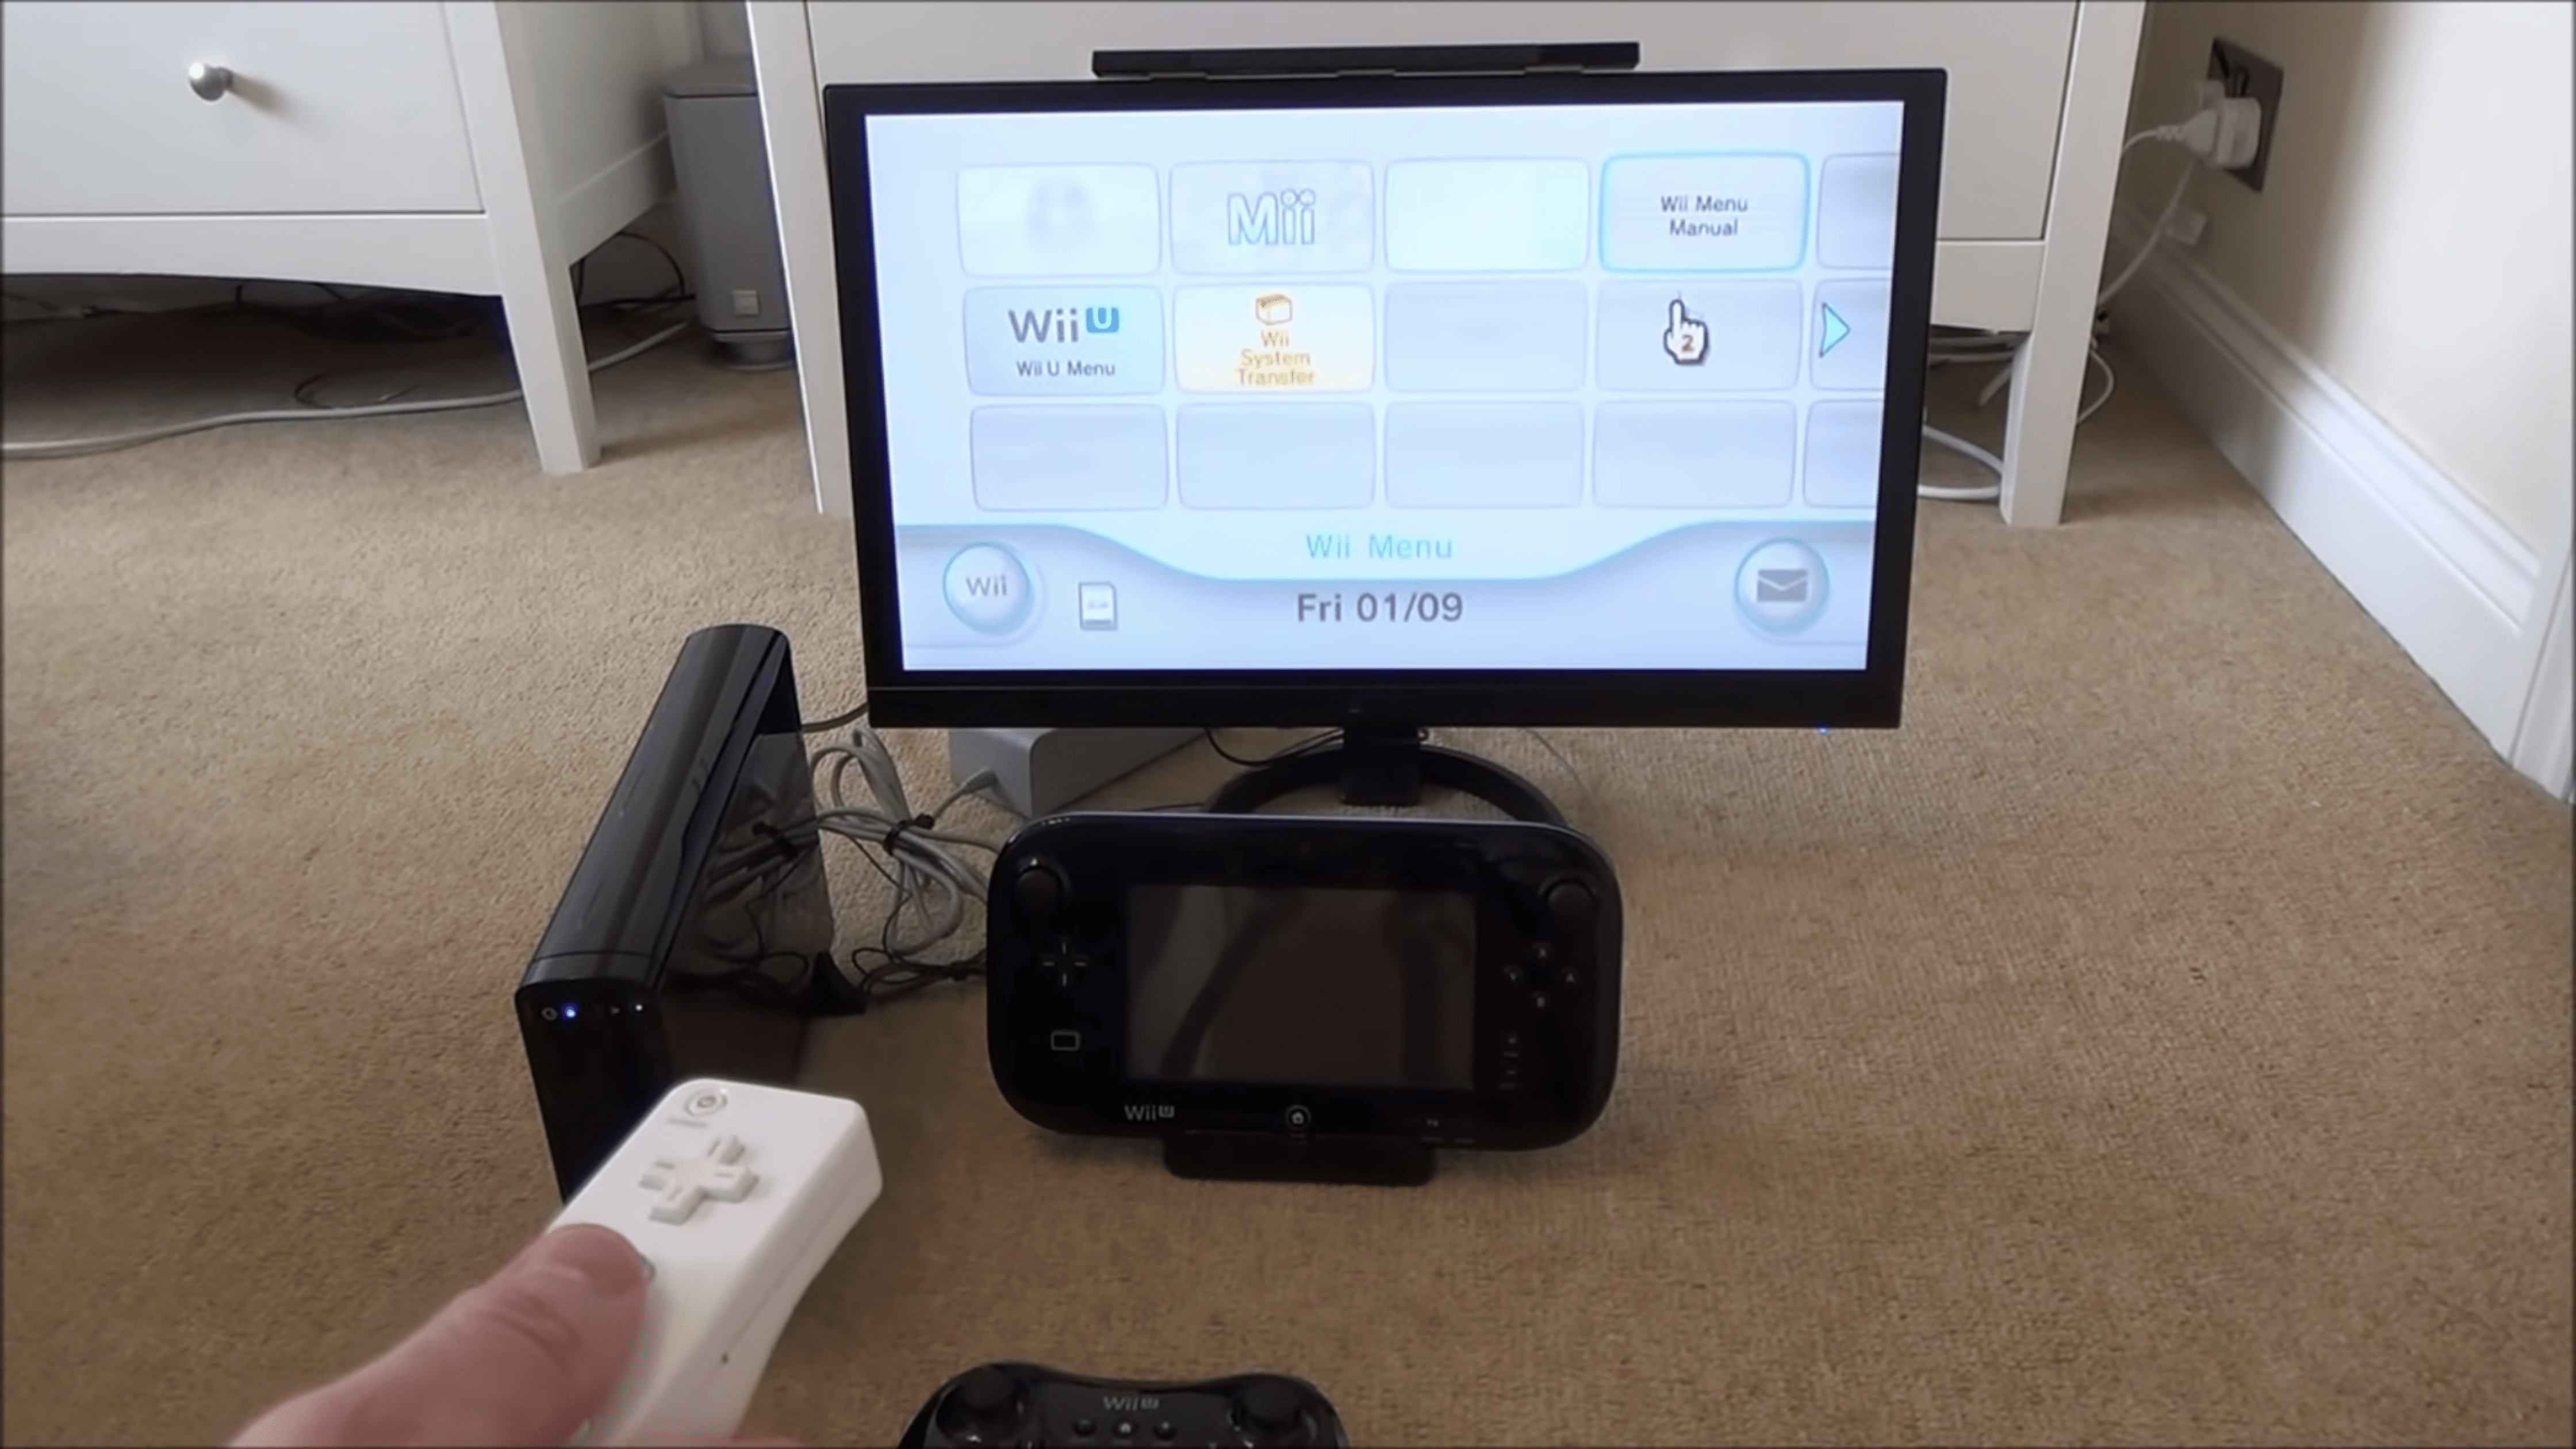 CONSOLE NO AUGE DO POTENCIAL - VALE A PENA UM Wii U EM 2022? 